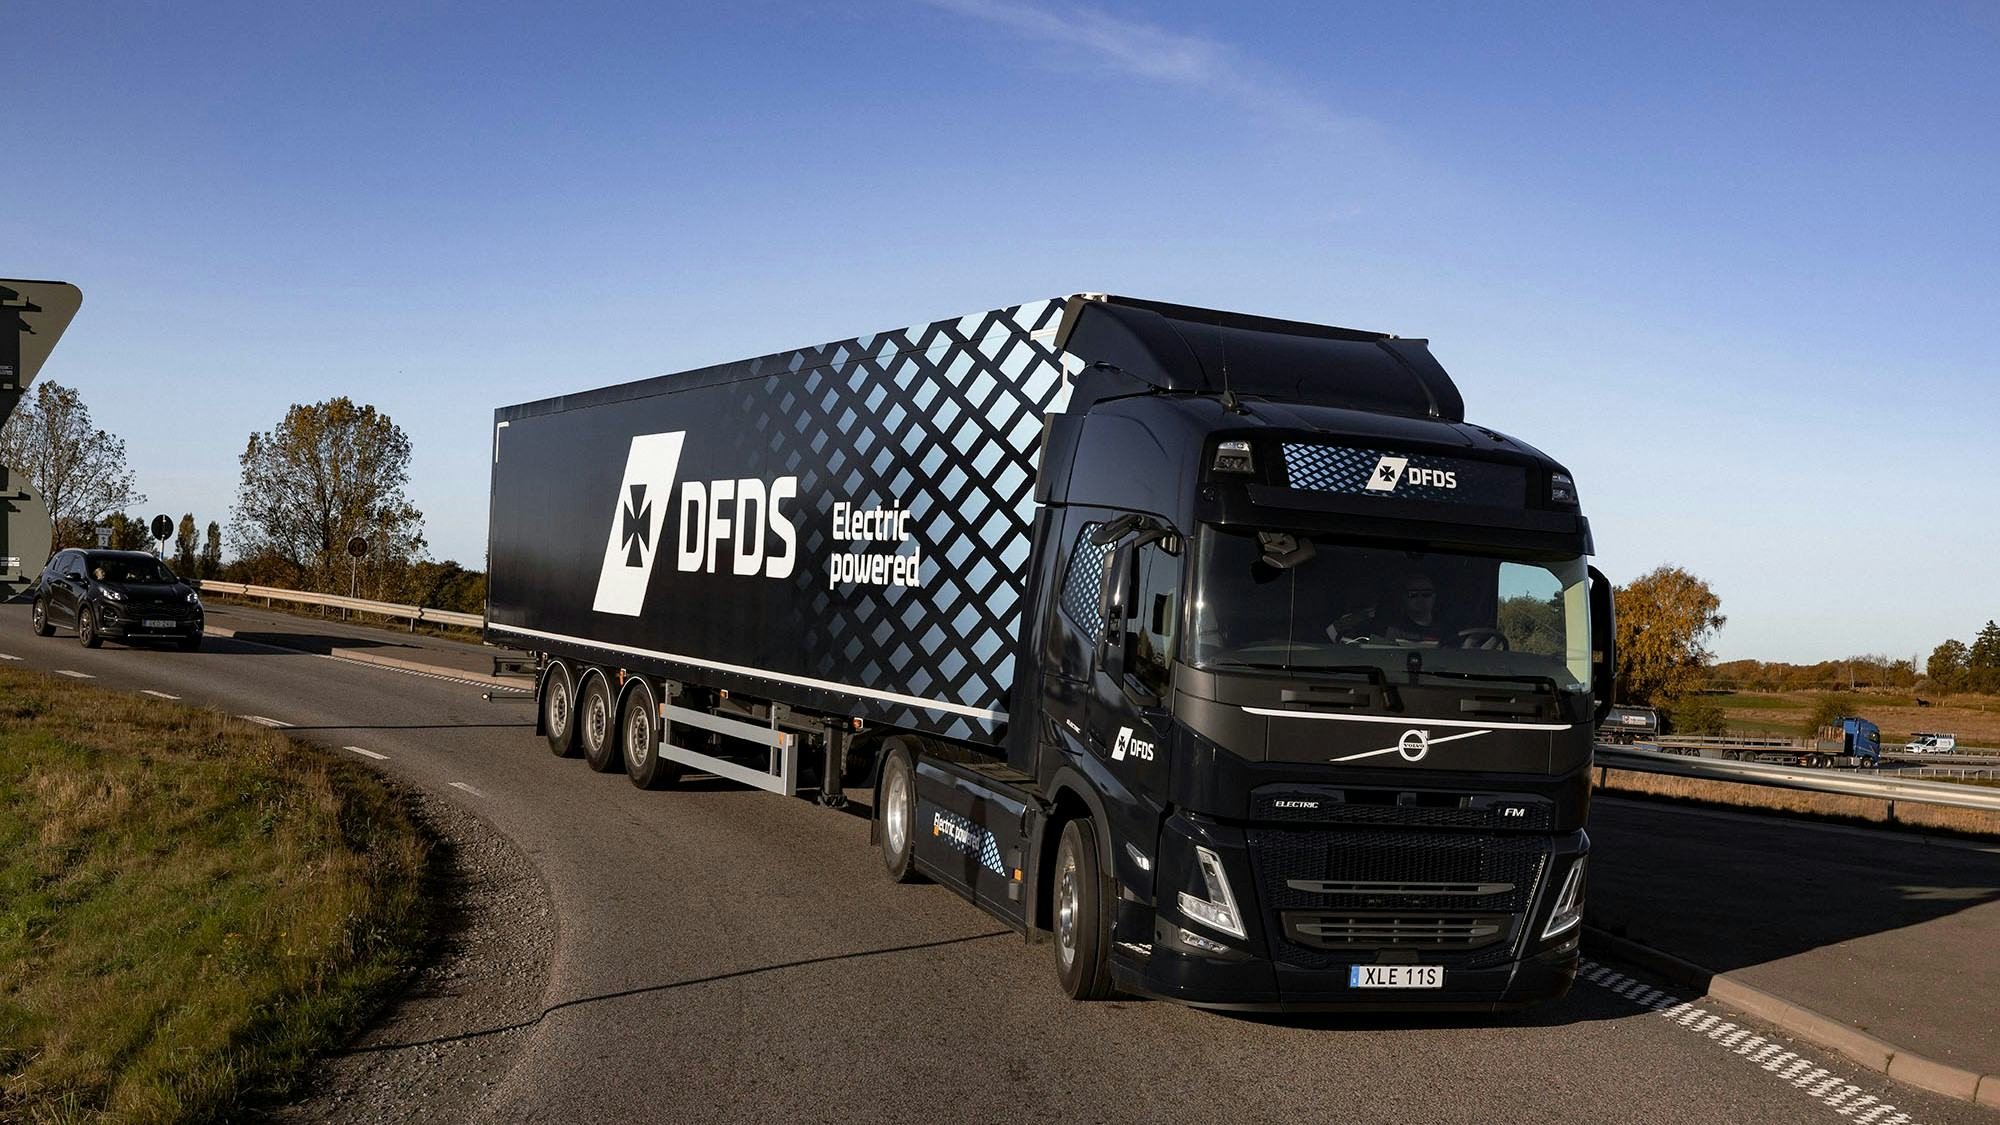 Volvo Trucks heeft vorige maand een bestelling voor honderd elektrische trucks ontvangen van DFDS. Hiermee verdubbelt het aantal elektrische Volvo-trucks in het wagenpark van de logistieke dienstverlener naar 225 trucks. Daarmee is DFDS een van de koplopers wat betreft elektrificatie van vrachtwagens in Europa.

